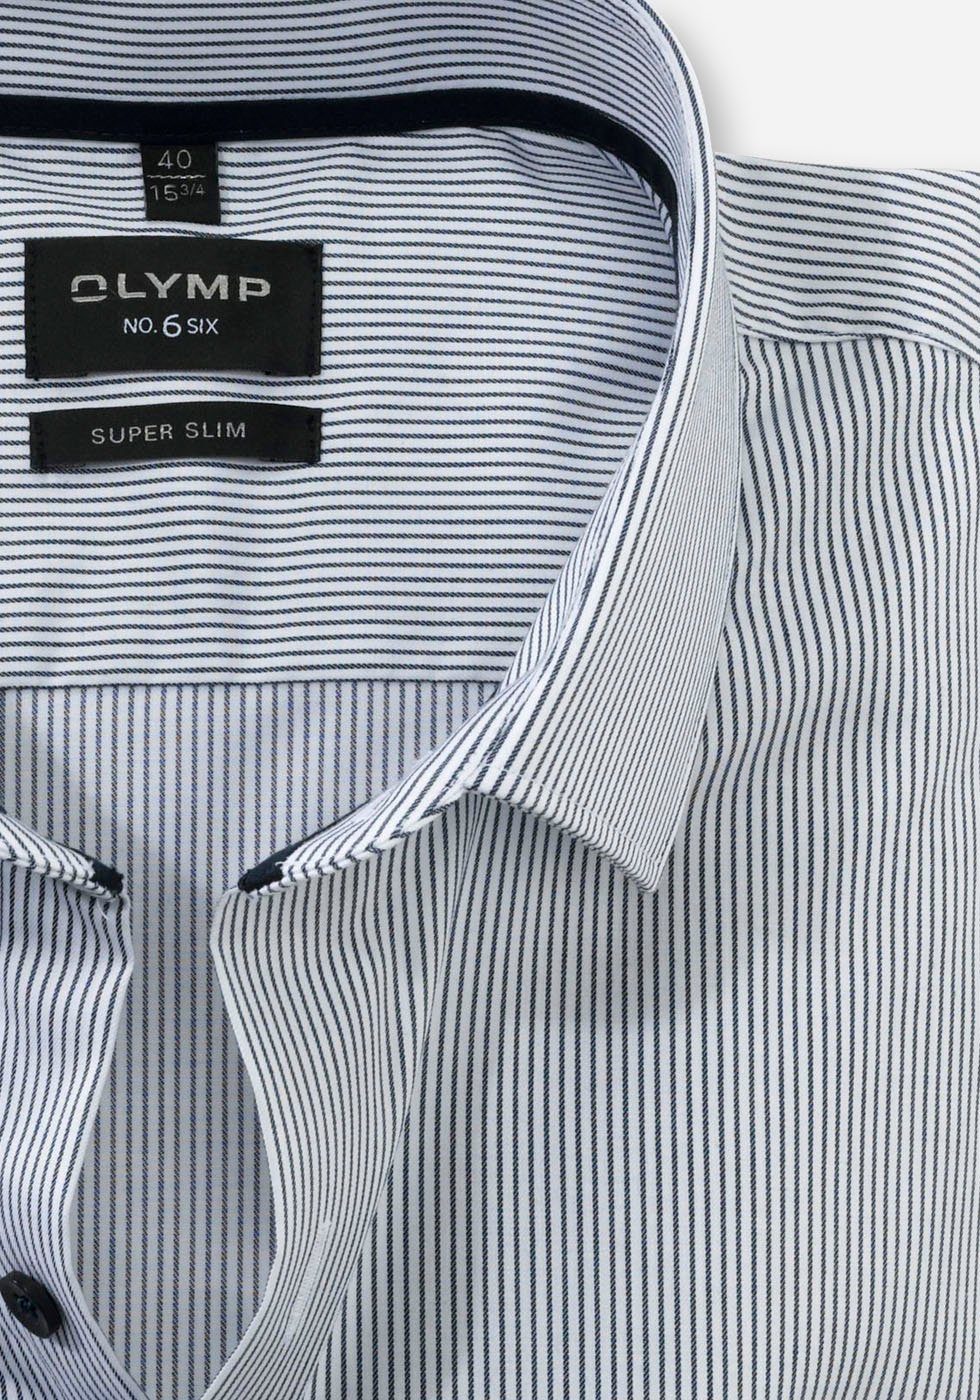 OLYMP Businesshemd der slim No No. super 6-Serie Six aus